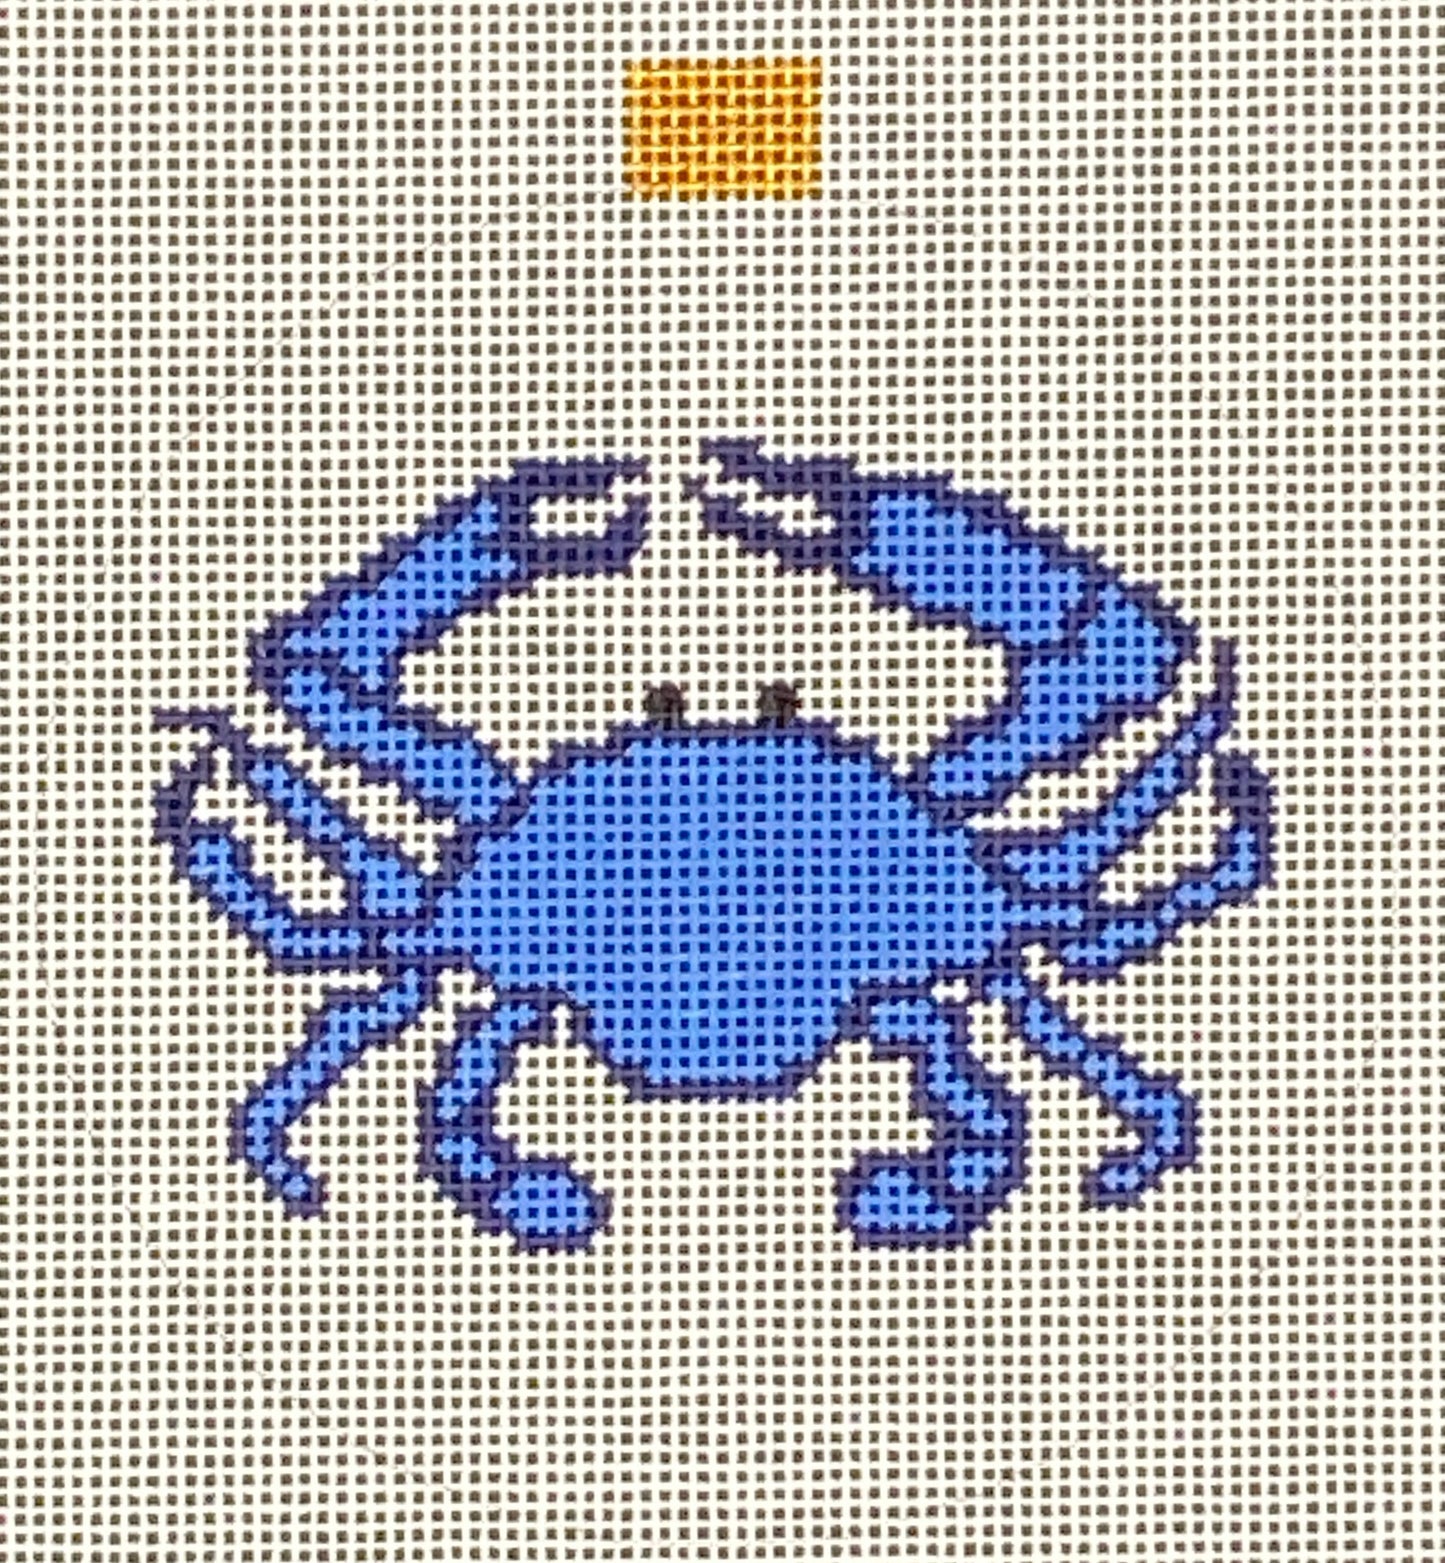 STUDIO SECOND: Blue Crab ornament/coaster